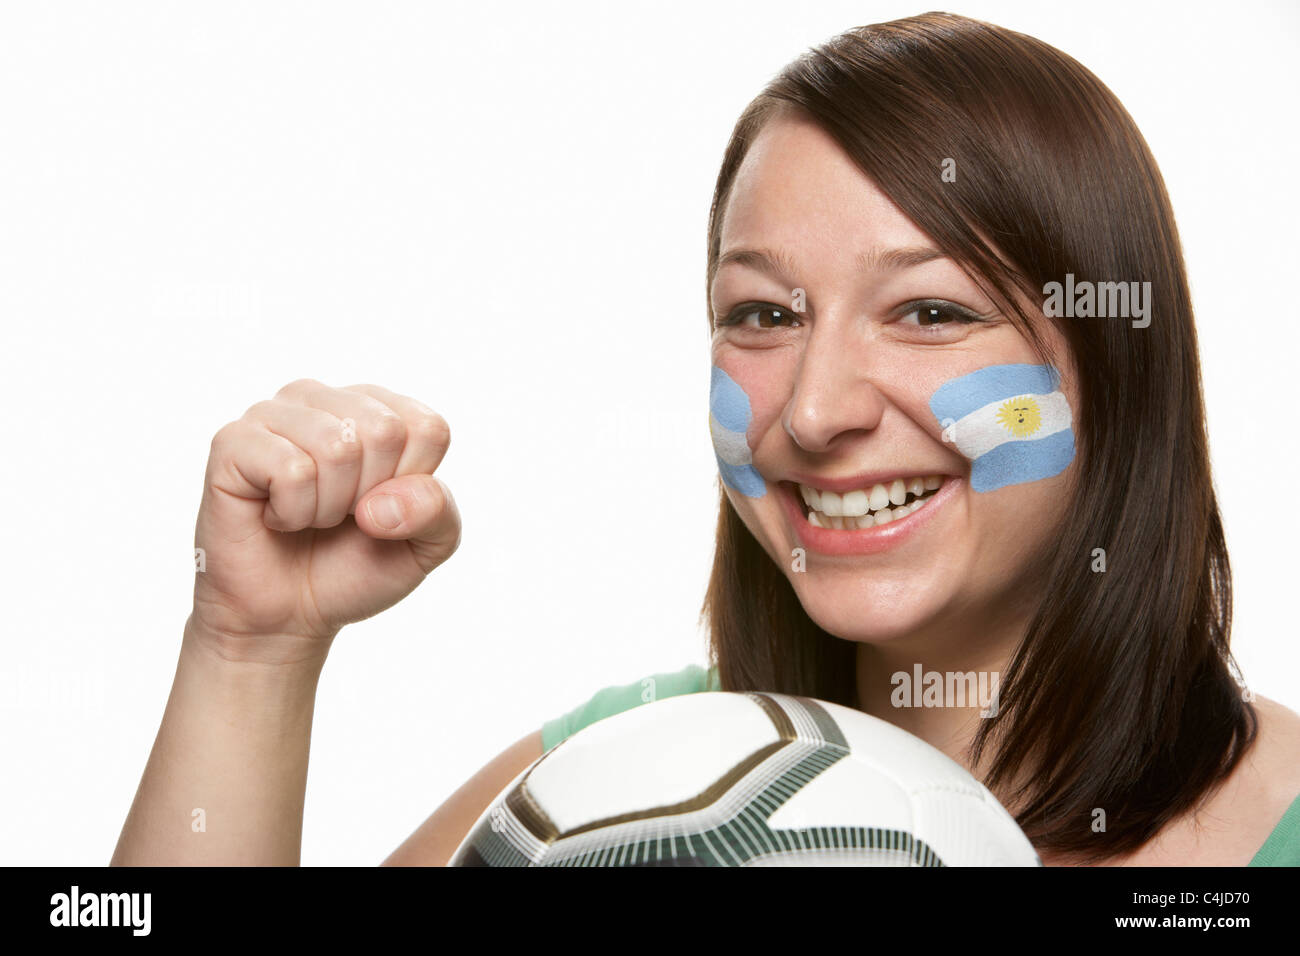 Femmina giovane tifoso di calcio con la bandiera argentina dipinta sul viso Foto Stock